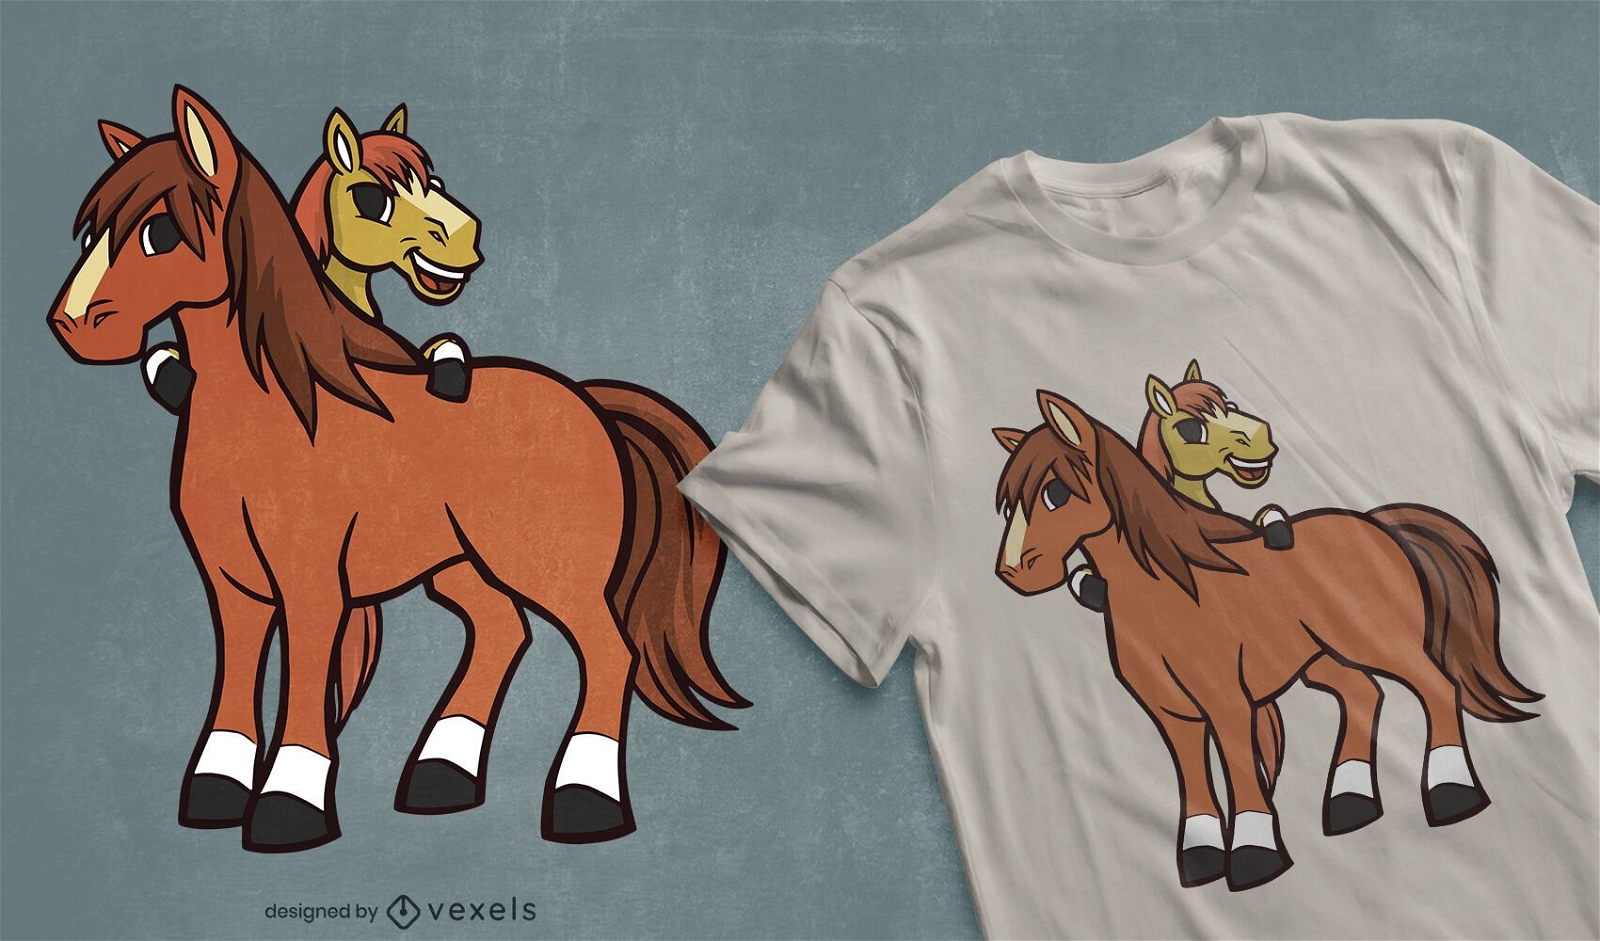 Dise?o de camiseta de caballos de dibujos animados.